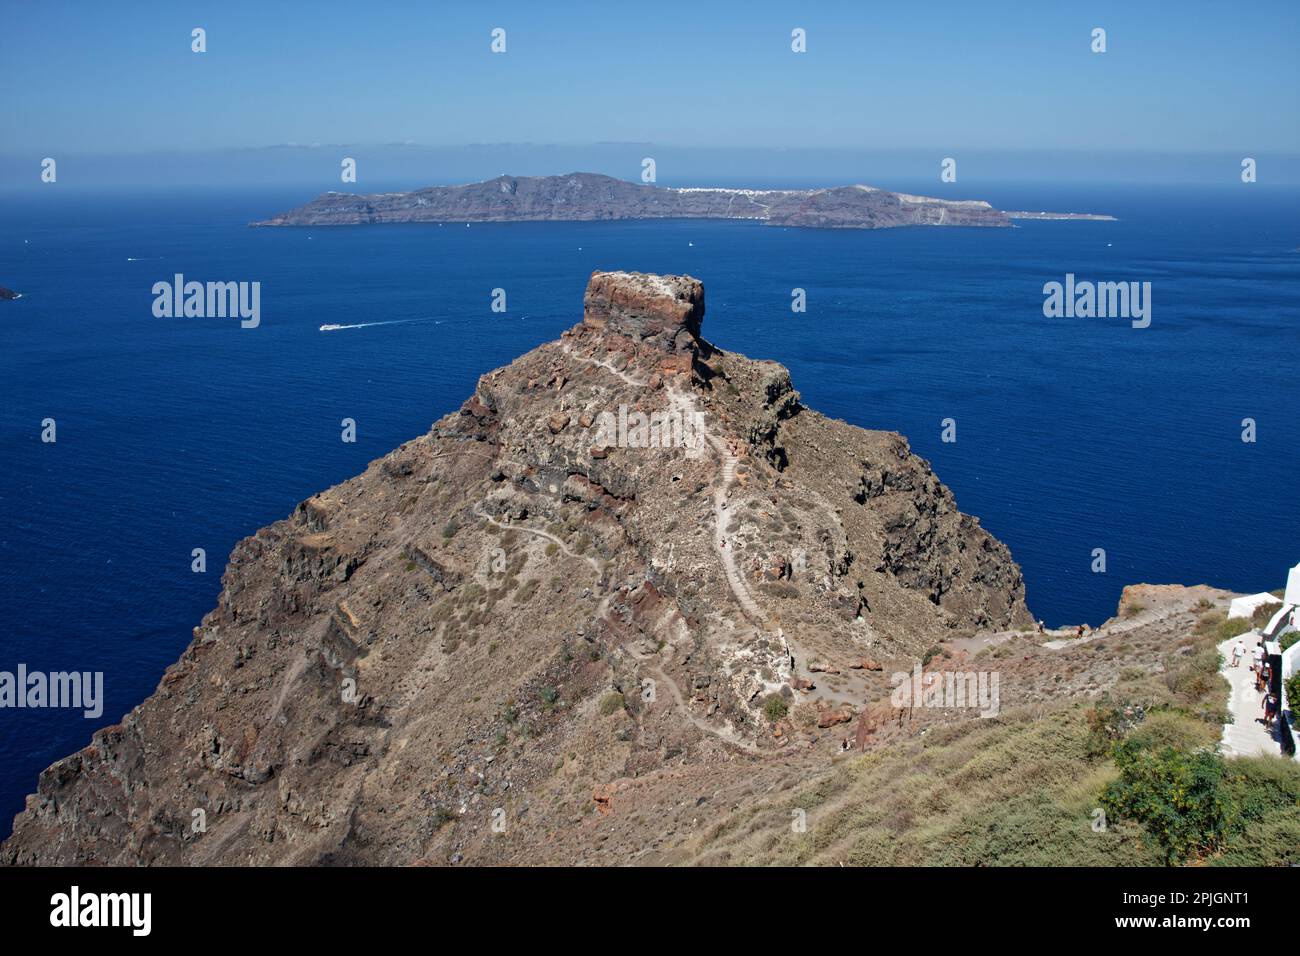 Le rocher de Skaros, vu d'Imerovigli, Santorin, Grèce Banque D'Images